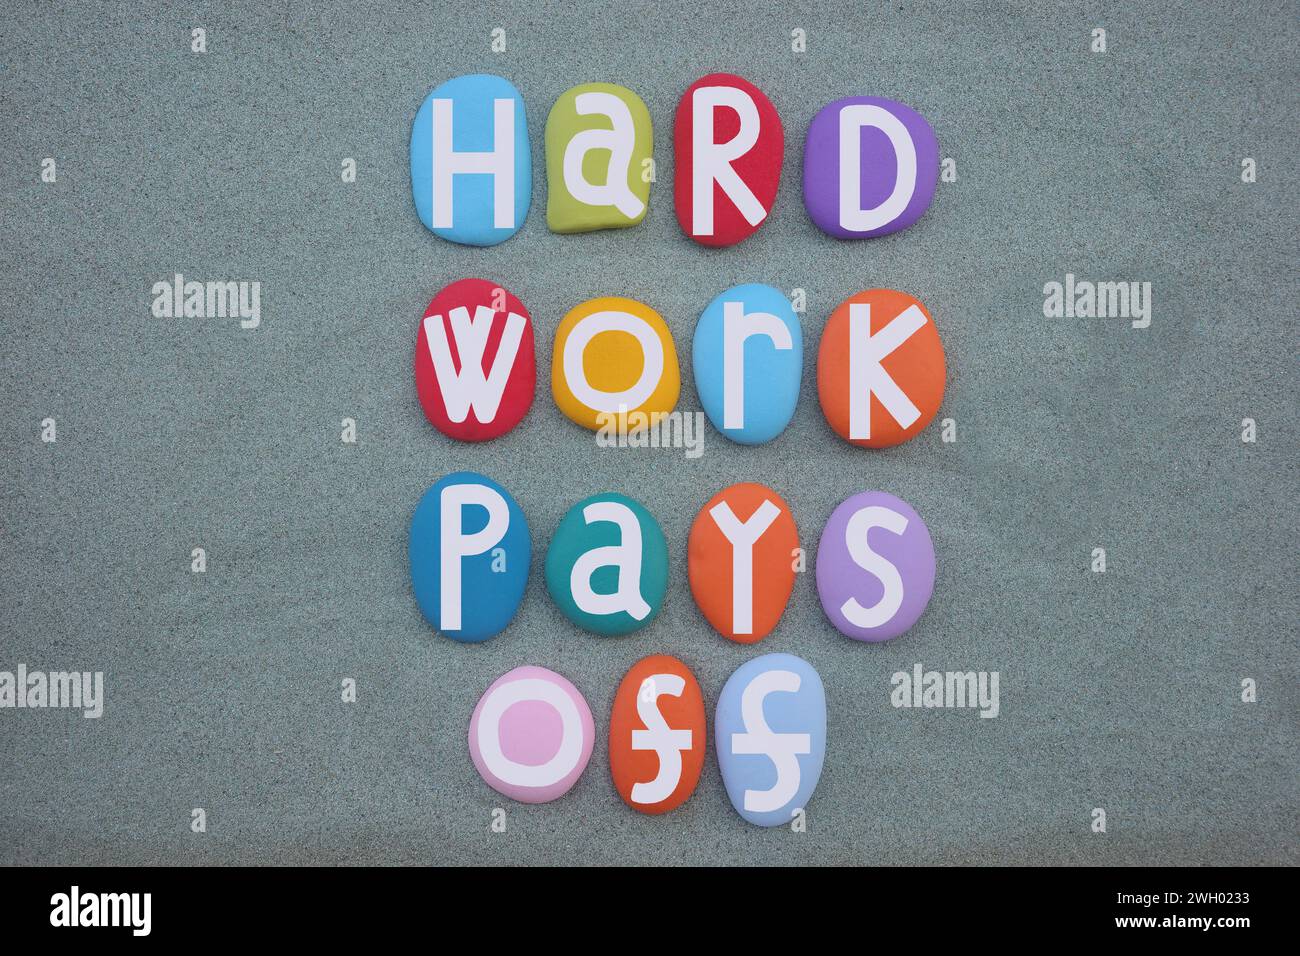 Hard Work rapporte, slogan motivant composé de lettres en pierre multicolores peintes à la main sur du sable vert Banque D'Images